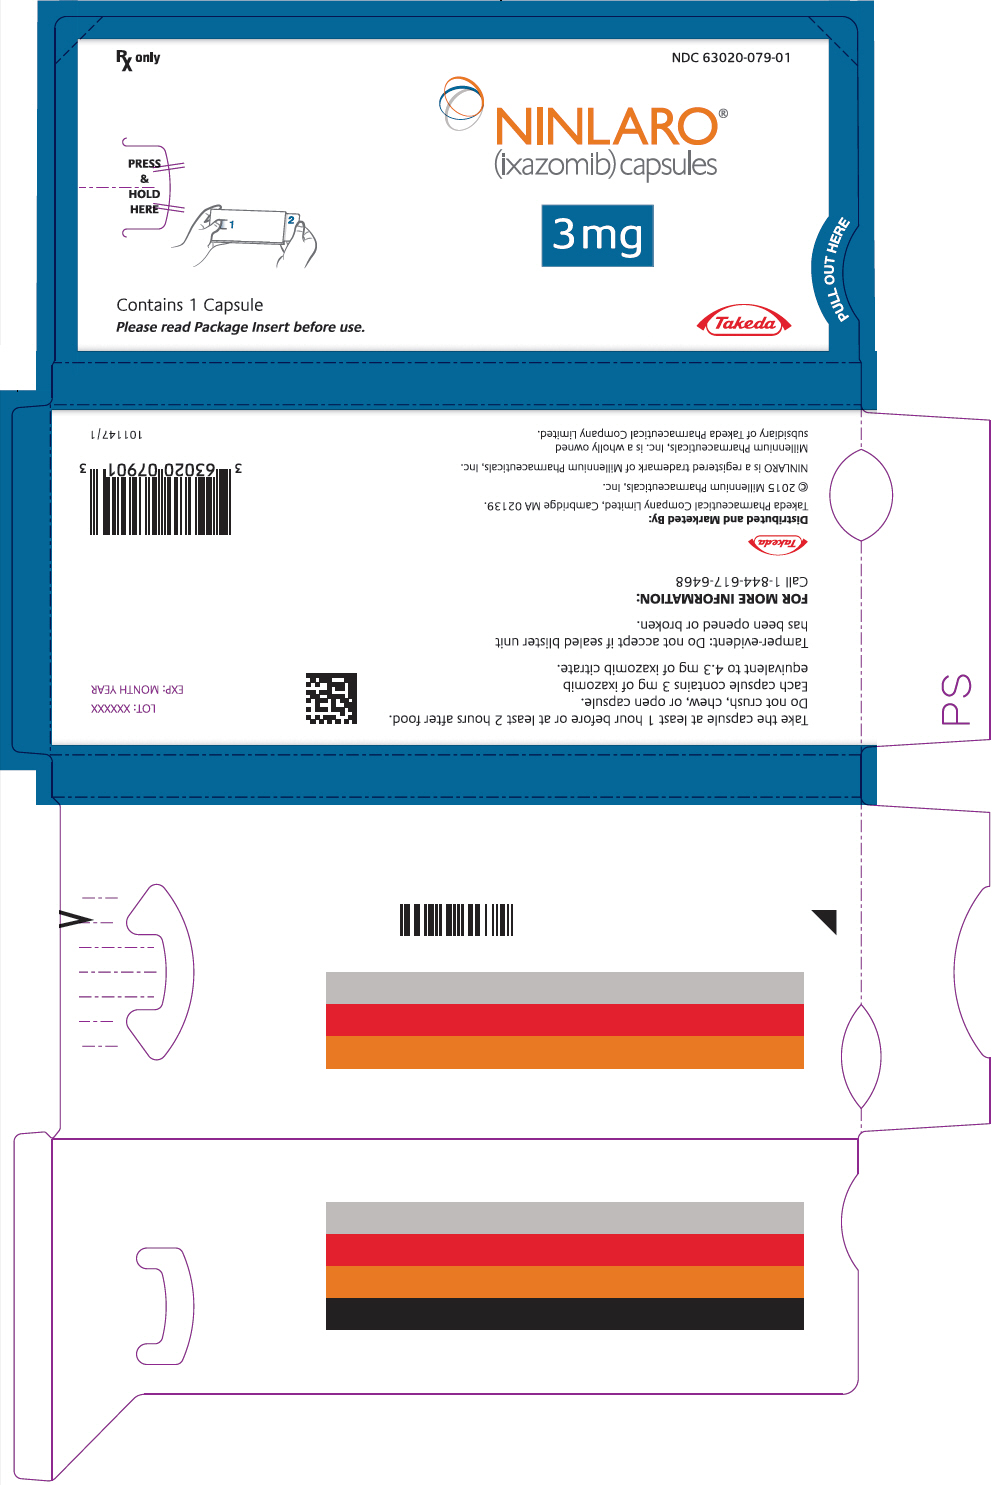 PRINCIPAL DISPLAY PANEL - 3 mg Capsule Blister Pack